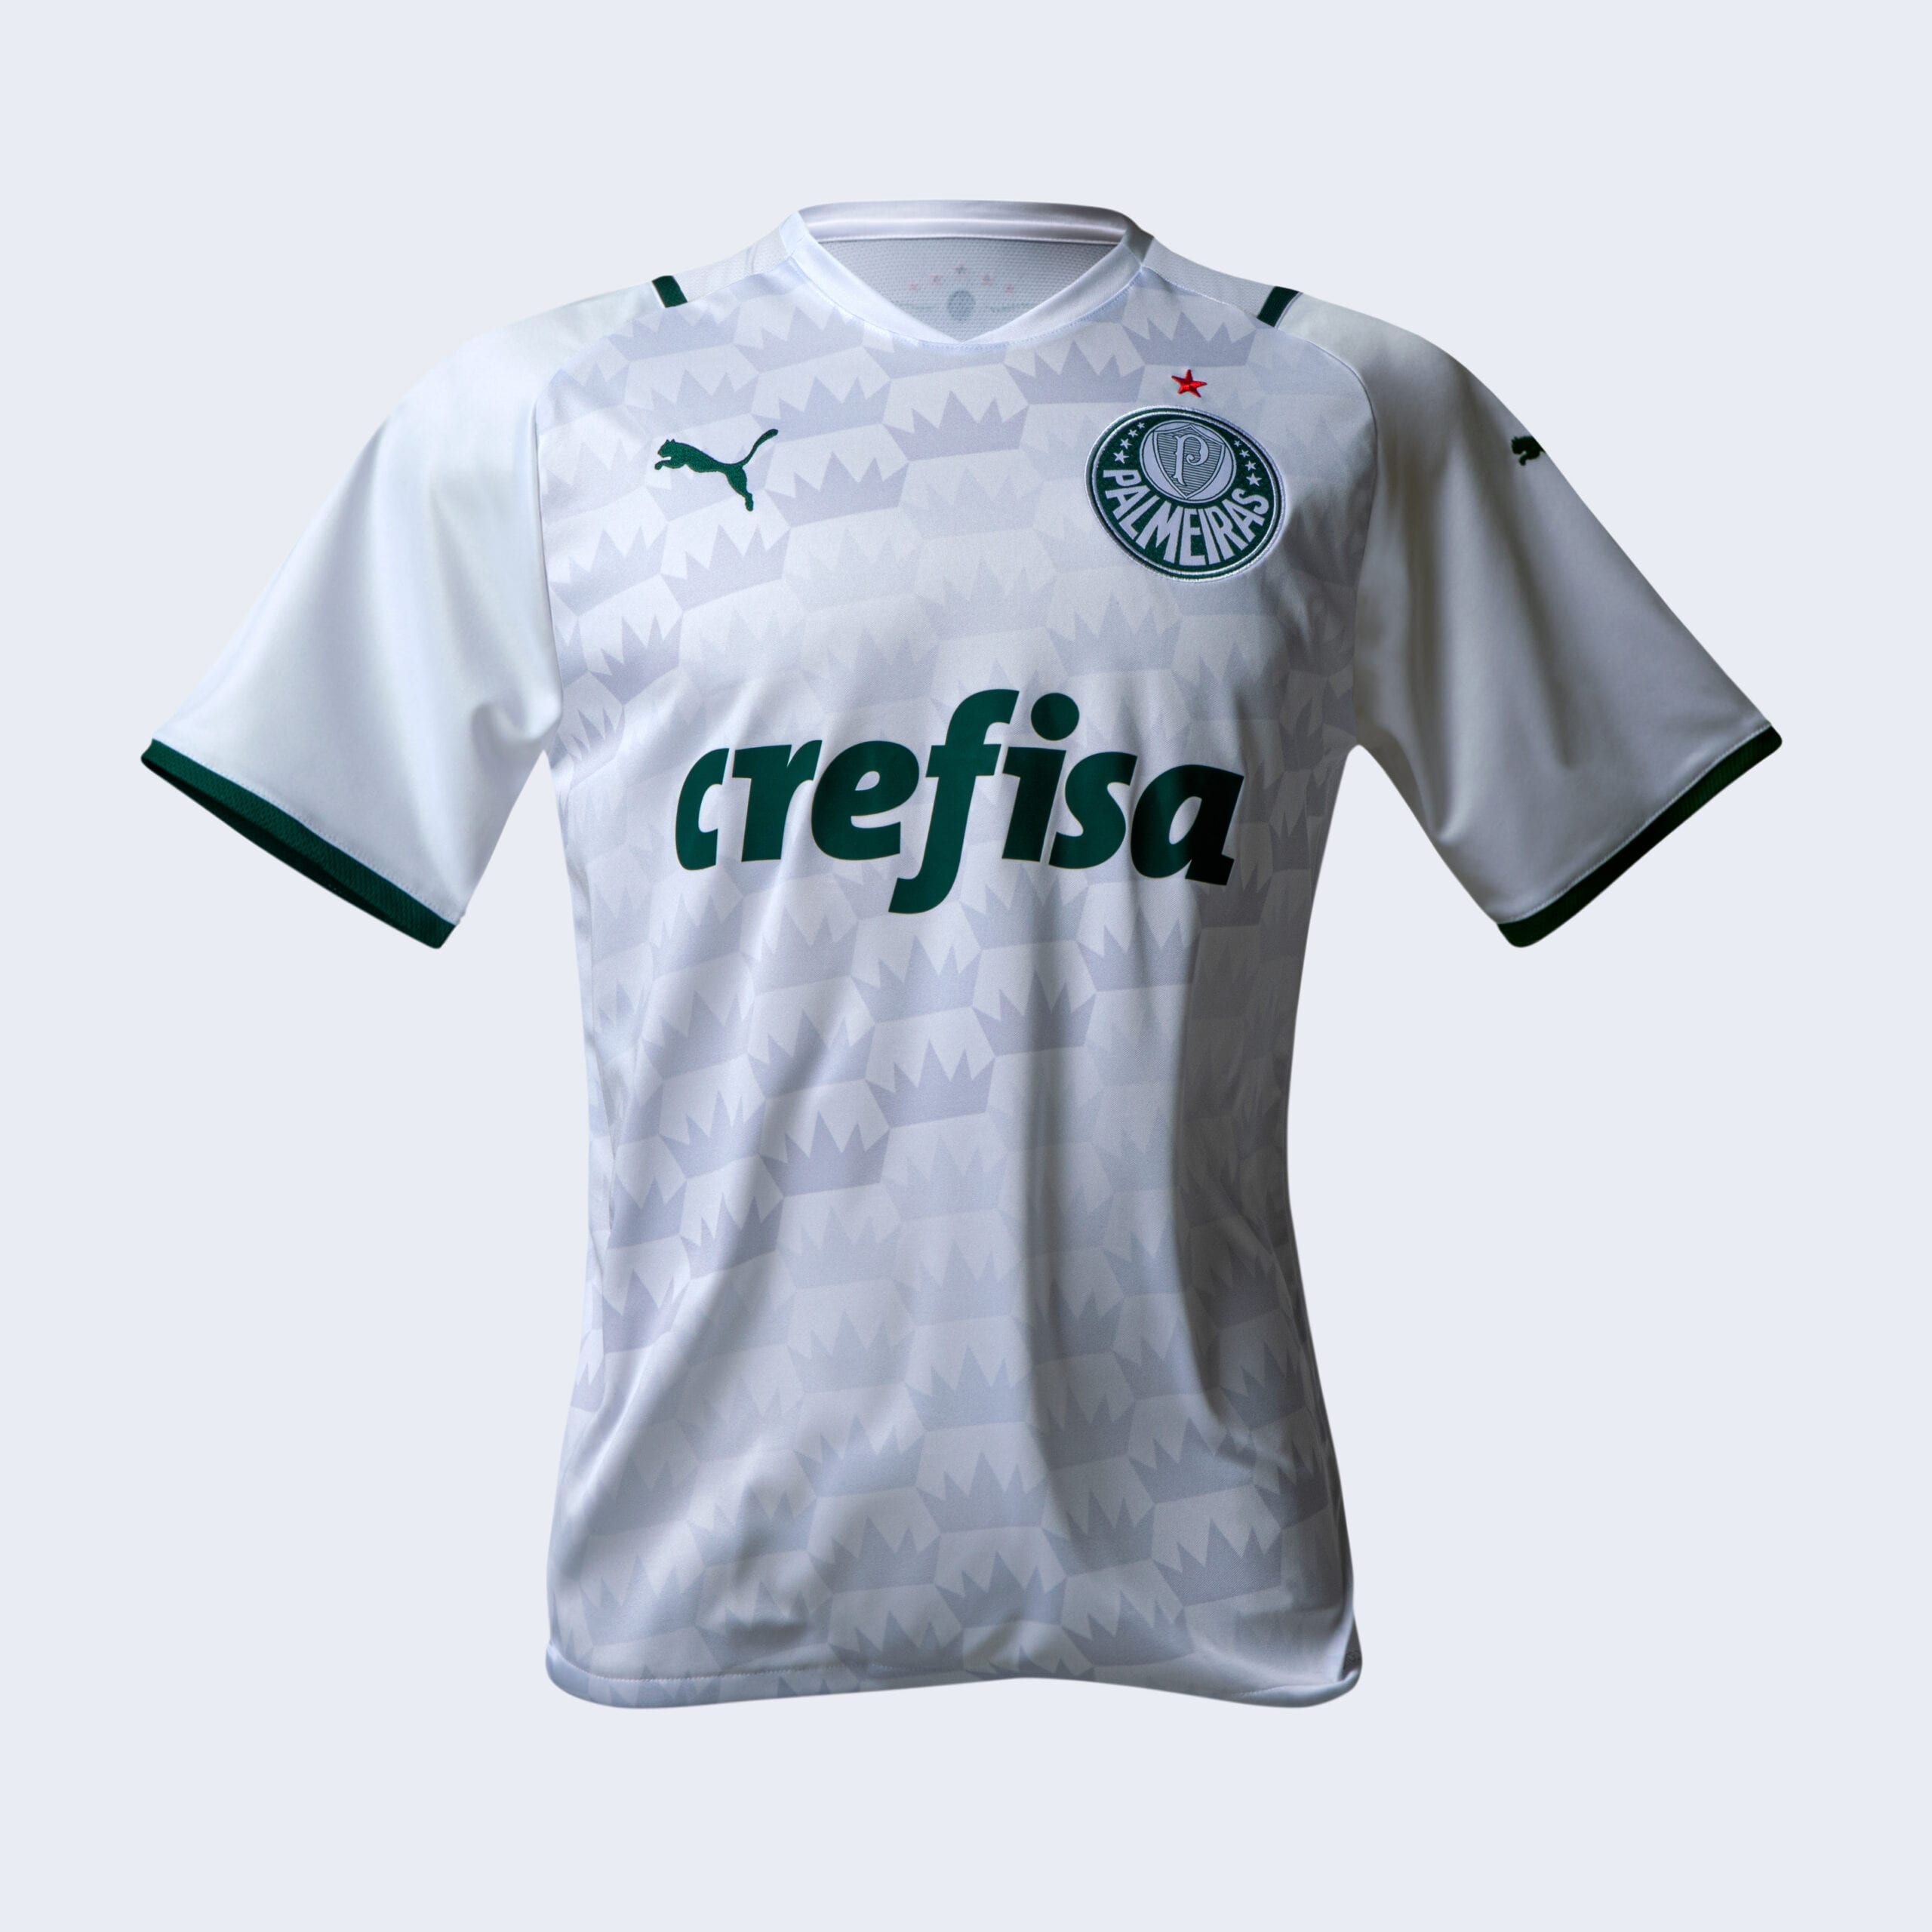 Nova camisa do Palmeiras é divulgada oficialmente; confira fotos e vídeo